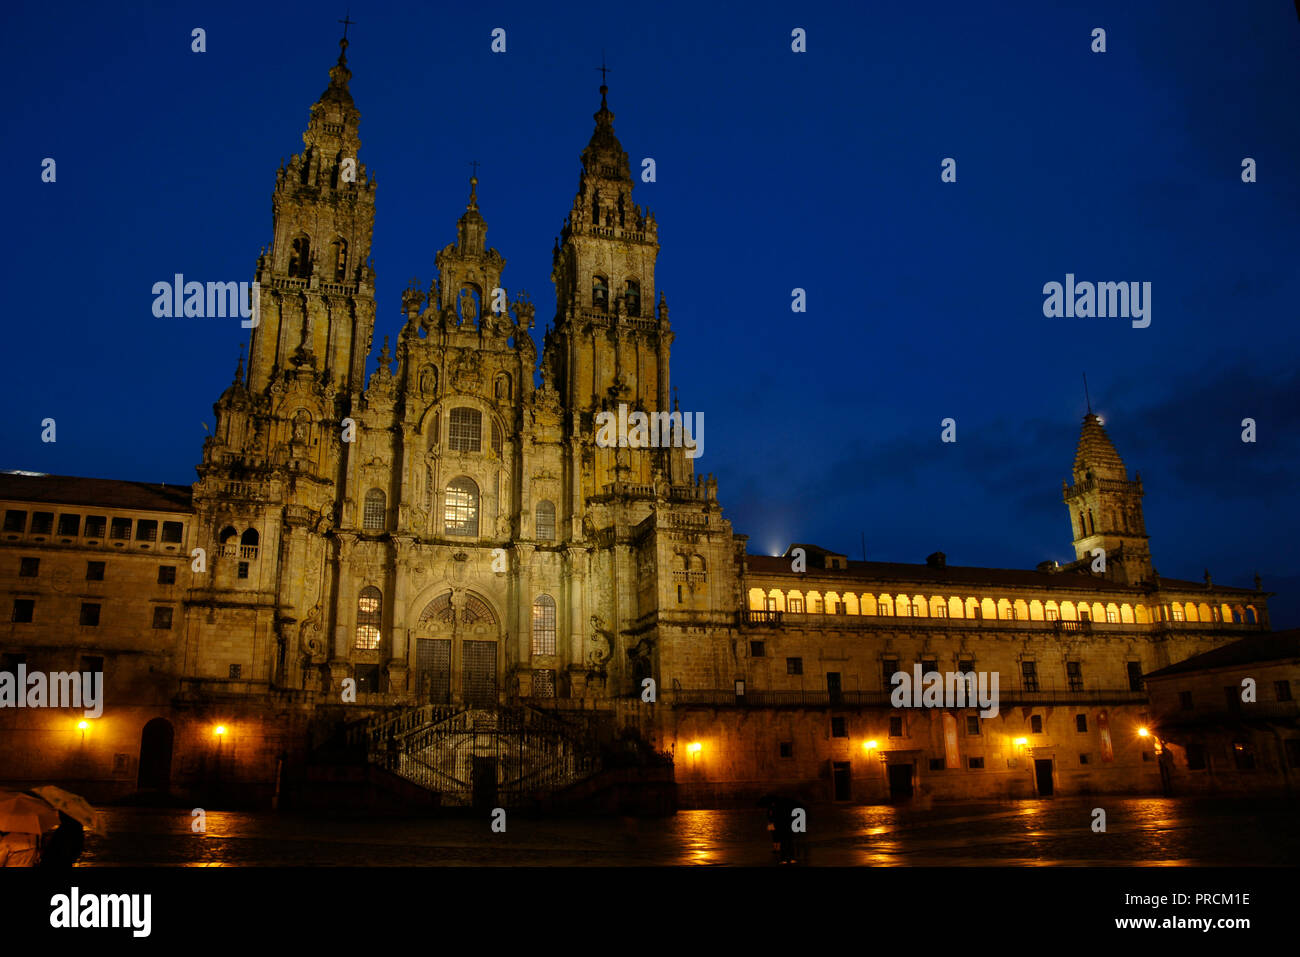 Santiago de Compostela, La Coruna province, Galicia, Spain. Cathedral. Nigth view of the Obradoiro facade. It was built in 18th century, in Baroque style, designed by Fernando de Casas Novoa (¿1670?-1750). Stock Photo